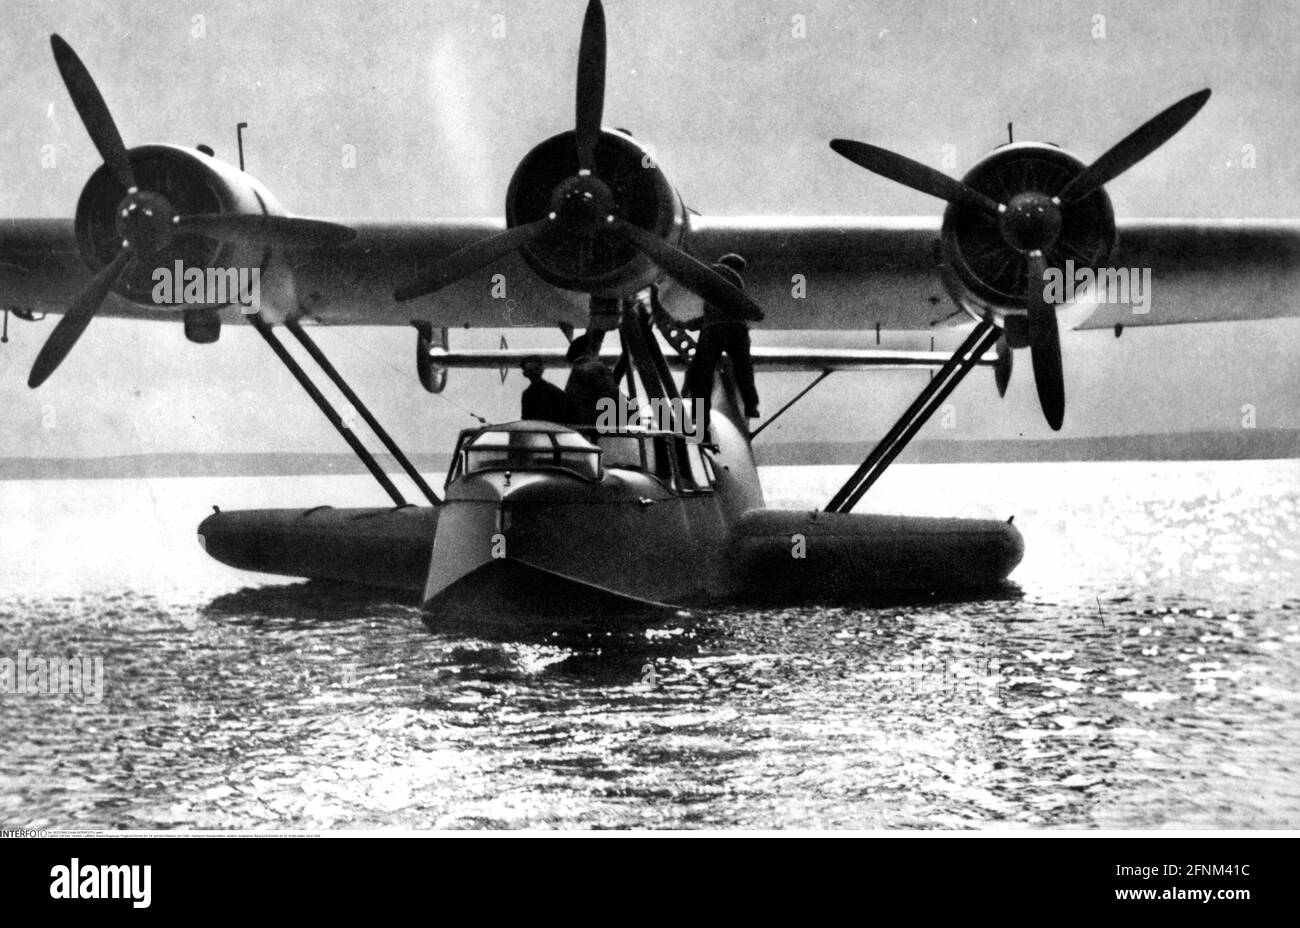 Transport / transport, aviation, hydravions, bateau volant Dornier do 24, sur l'eau, vers 1940, À USAGE ÉDITORIAL EXCLUSIF Banque D'Images